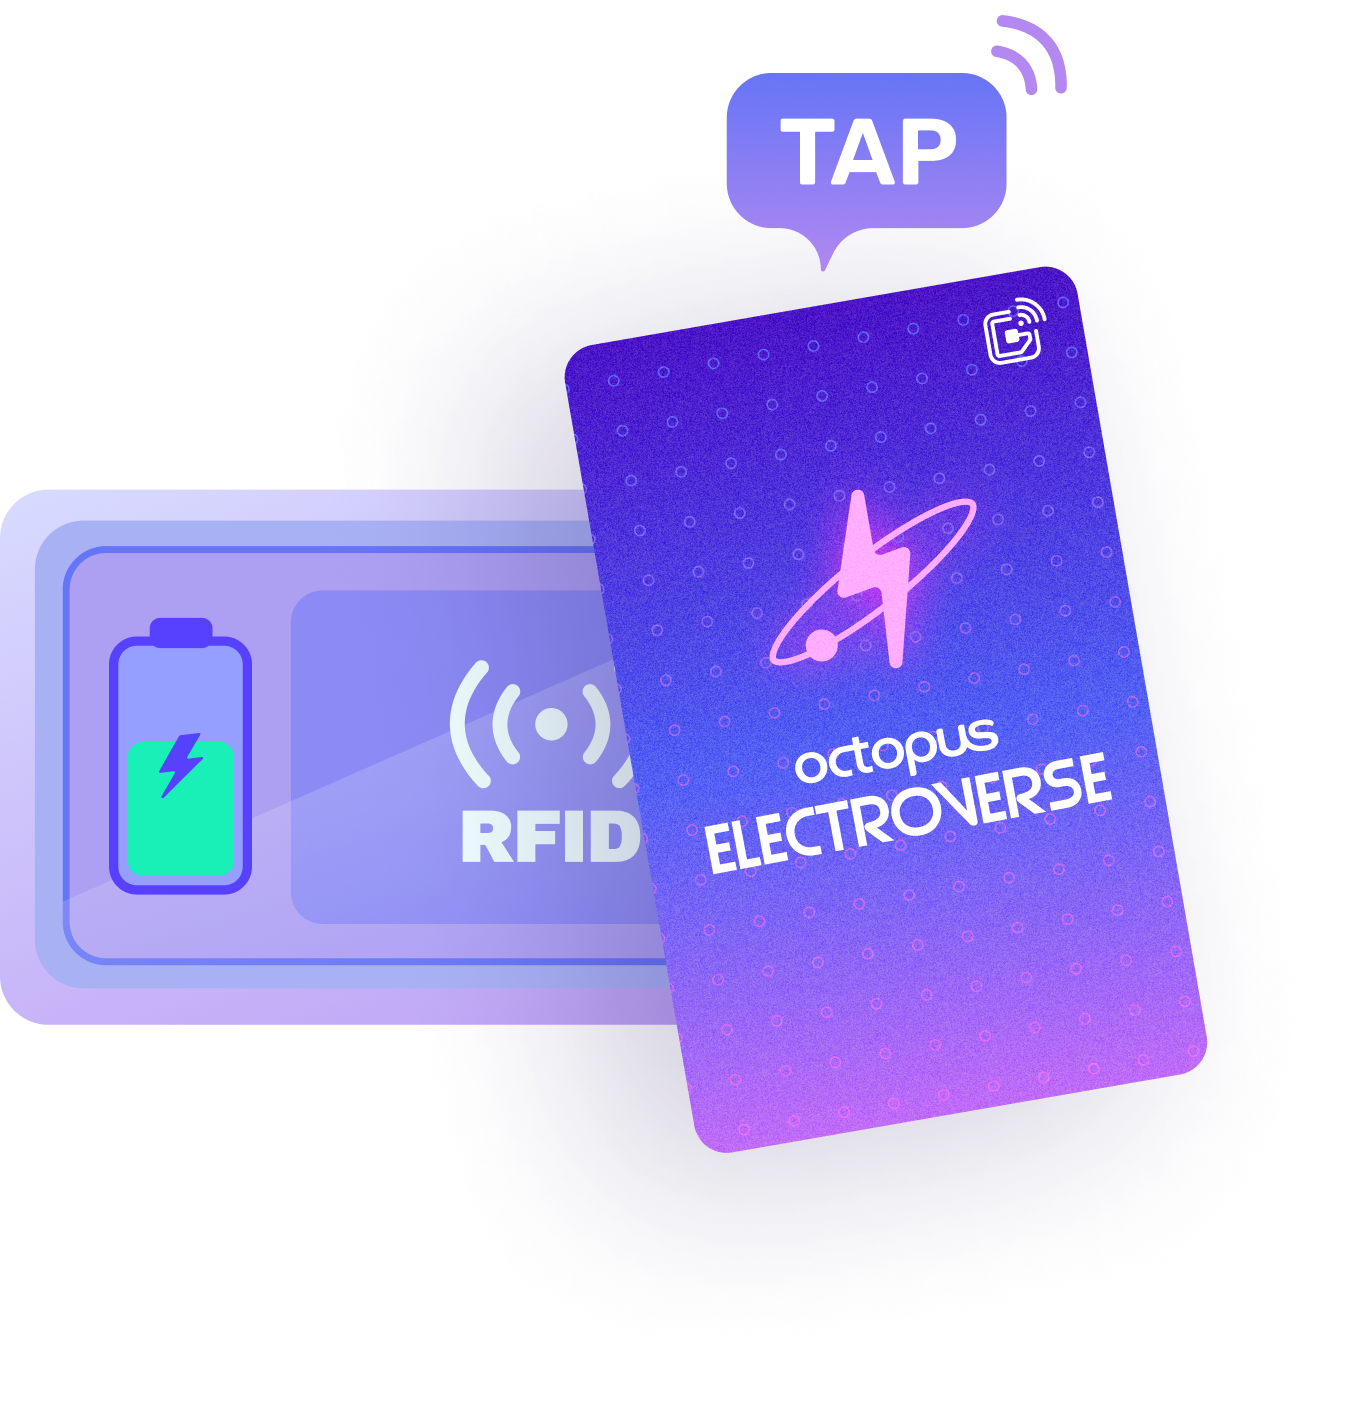 RFID Electrocard